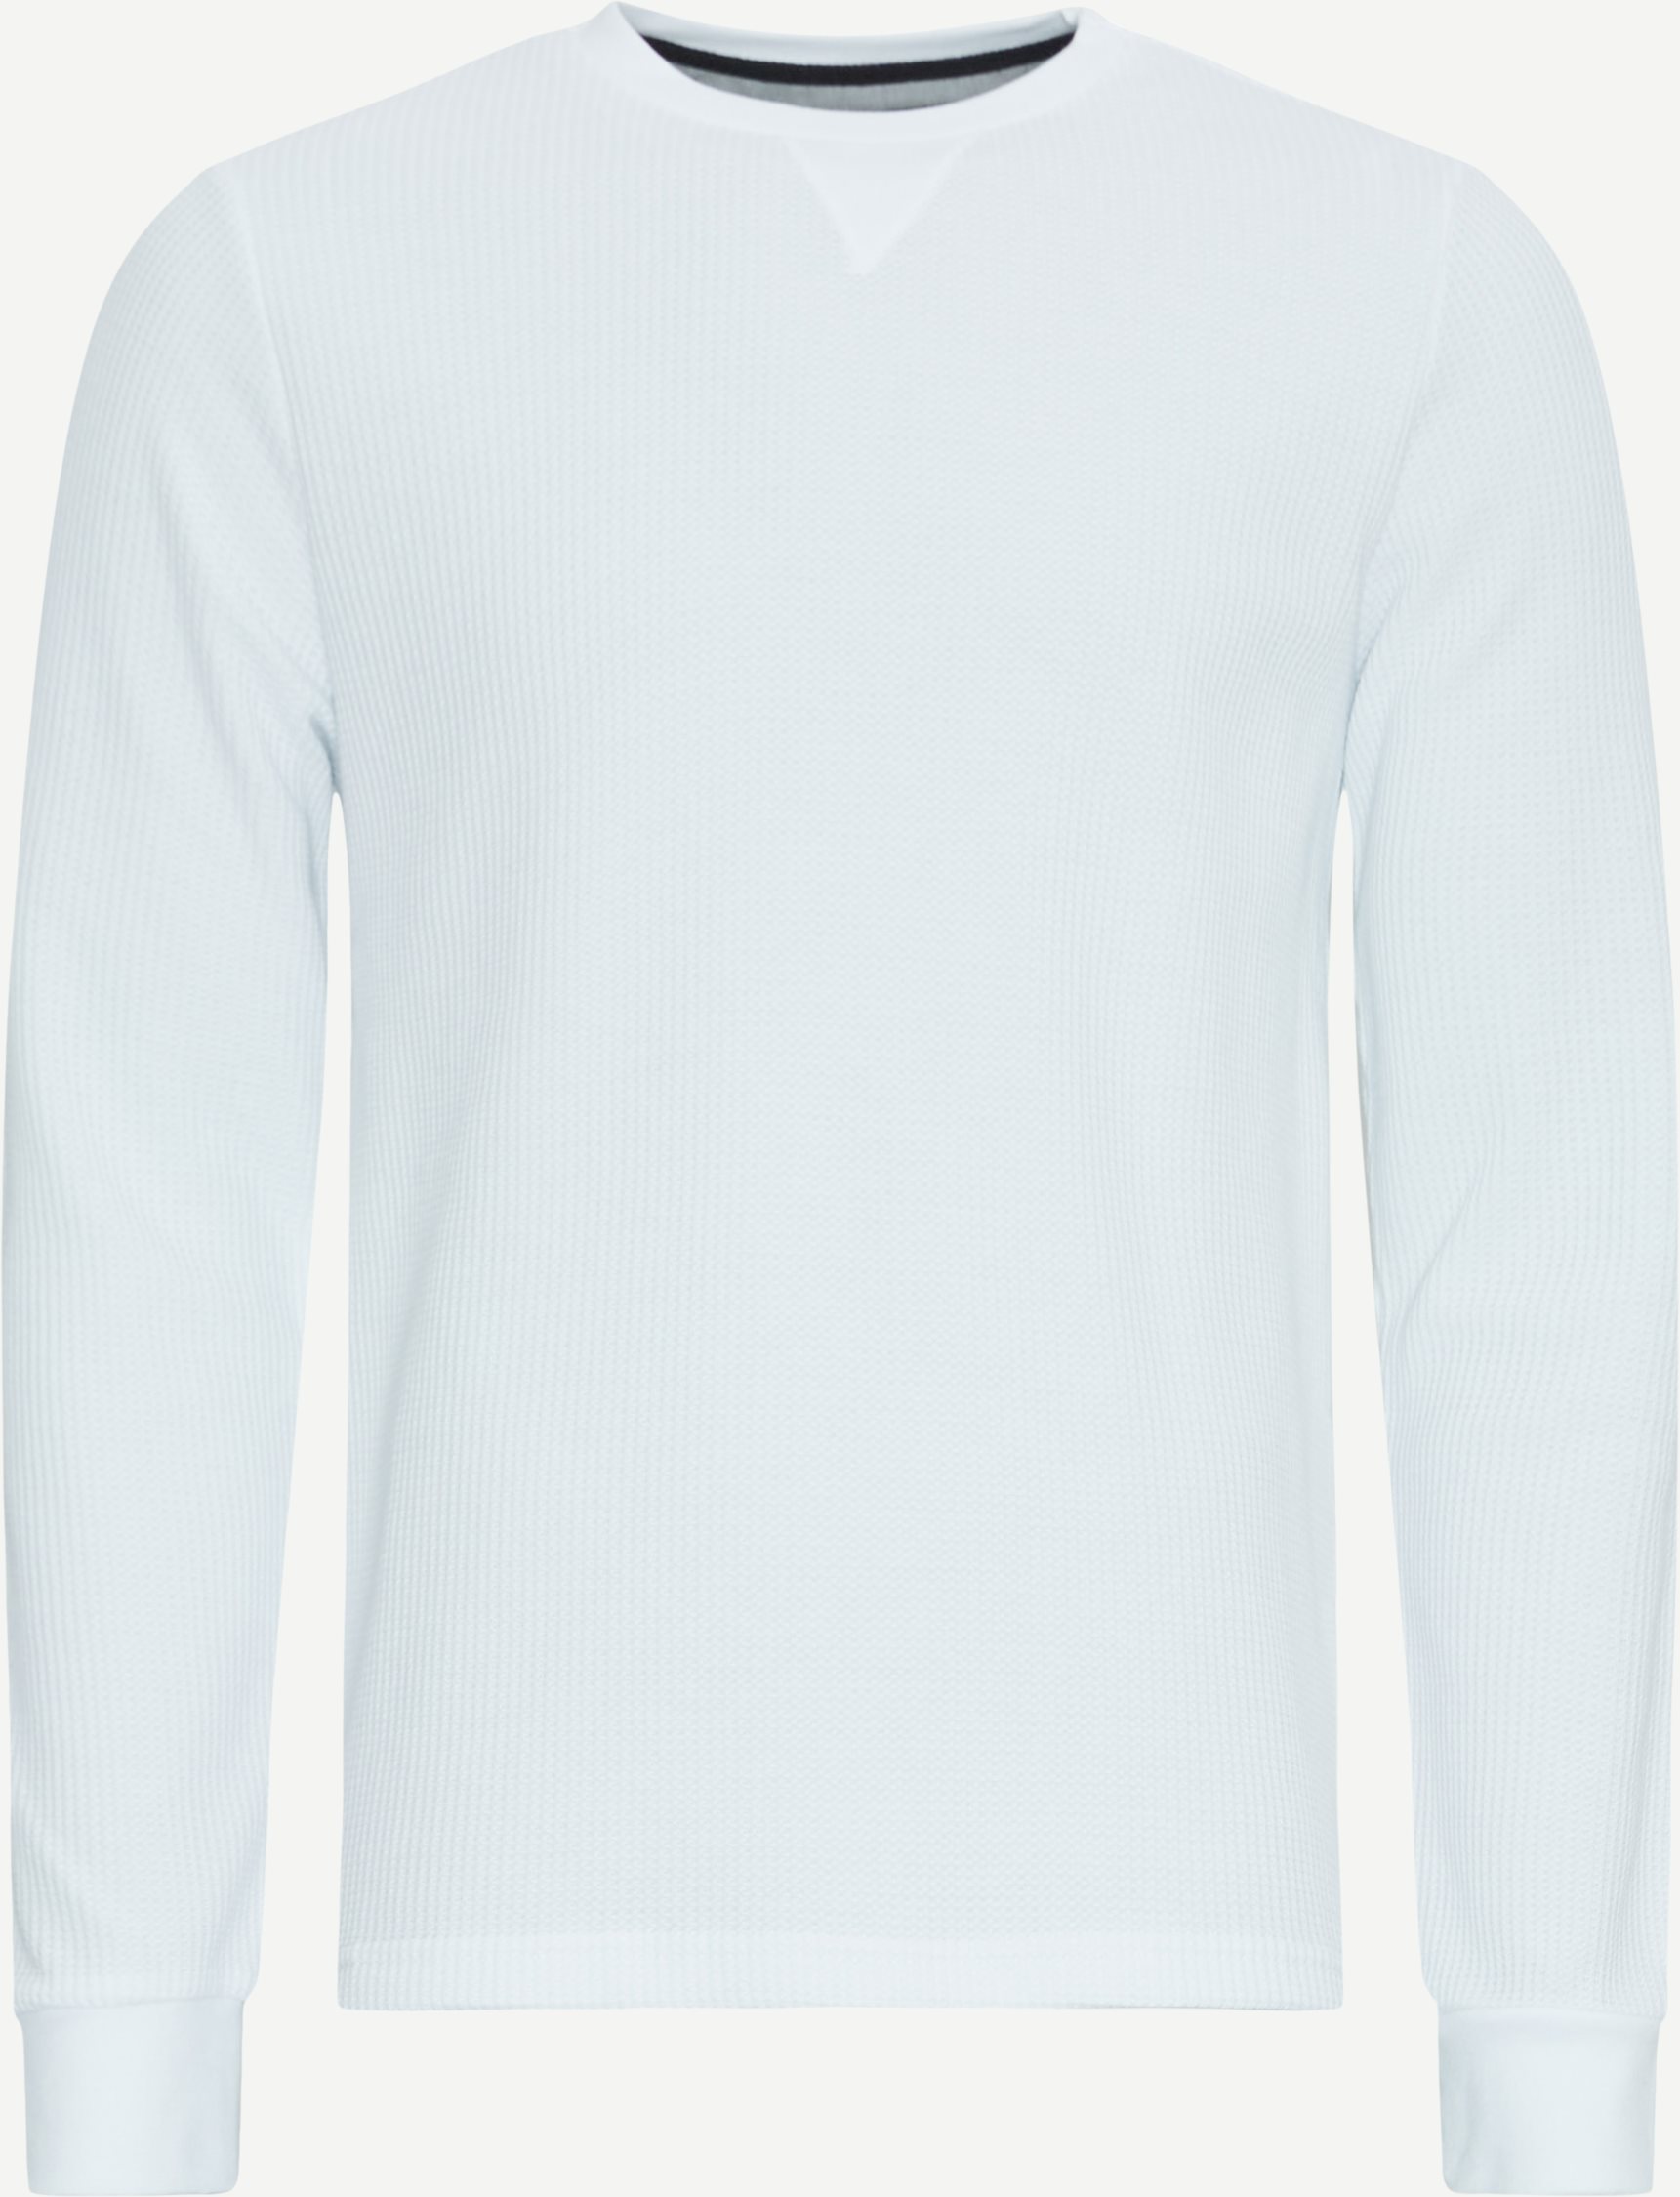 Coney Island Sweatshirts CAGLIARI White